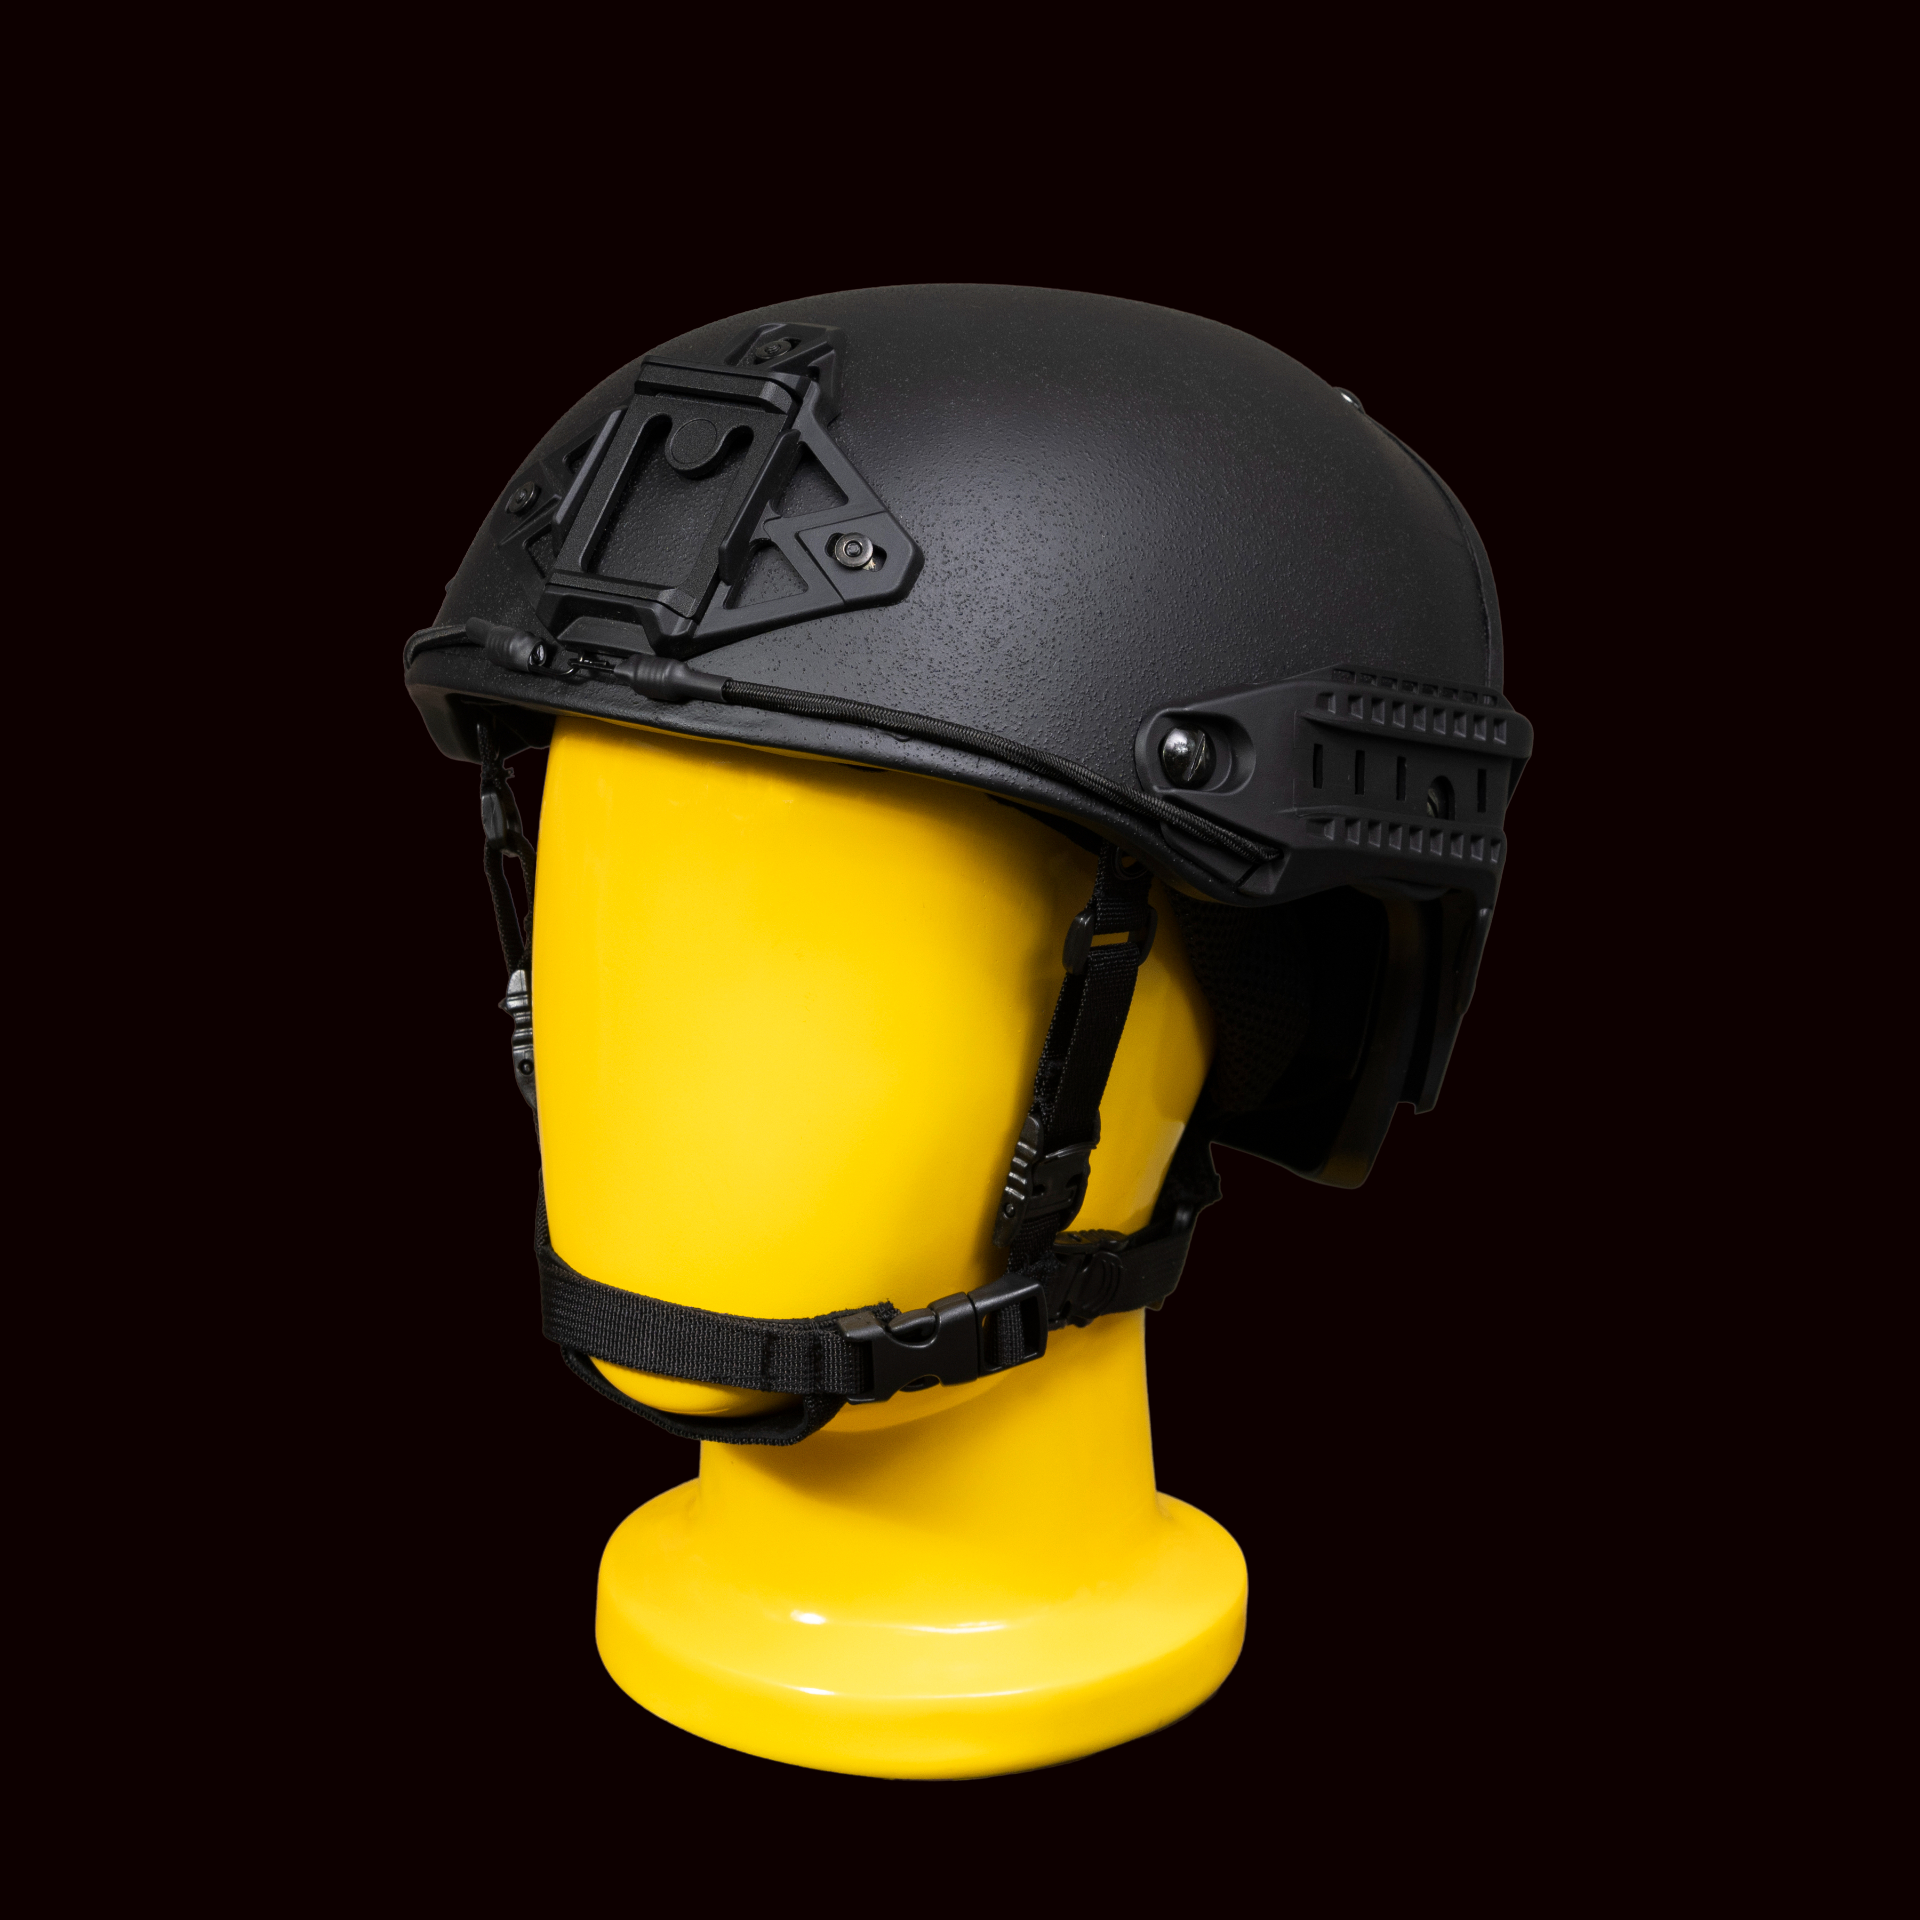 Militech ArcticHelm Level IIIA Helmet